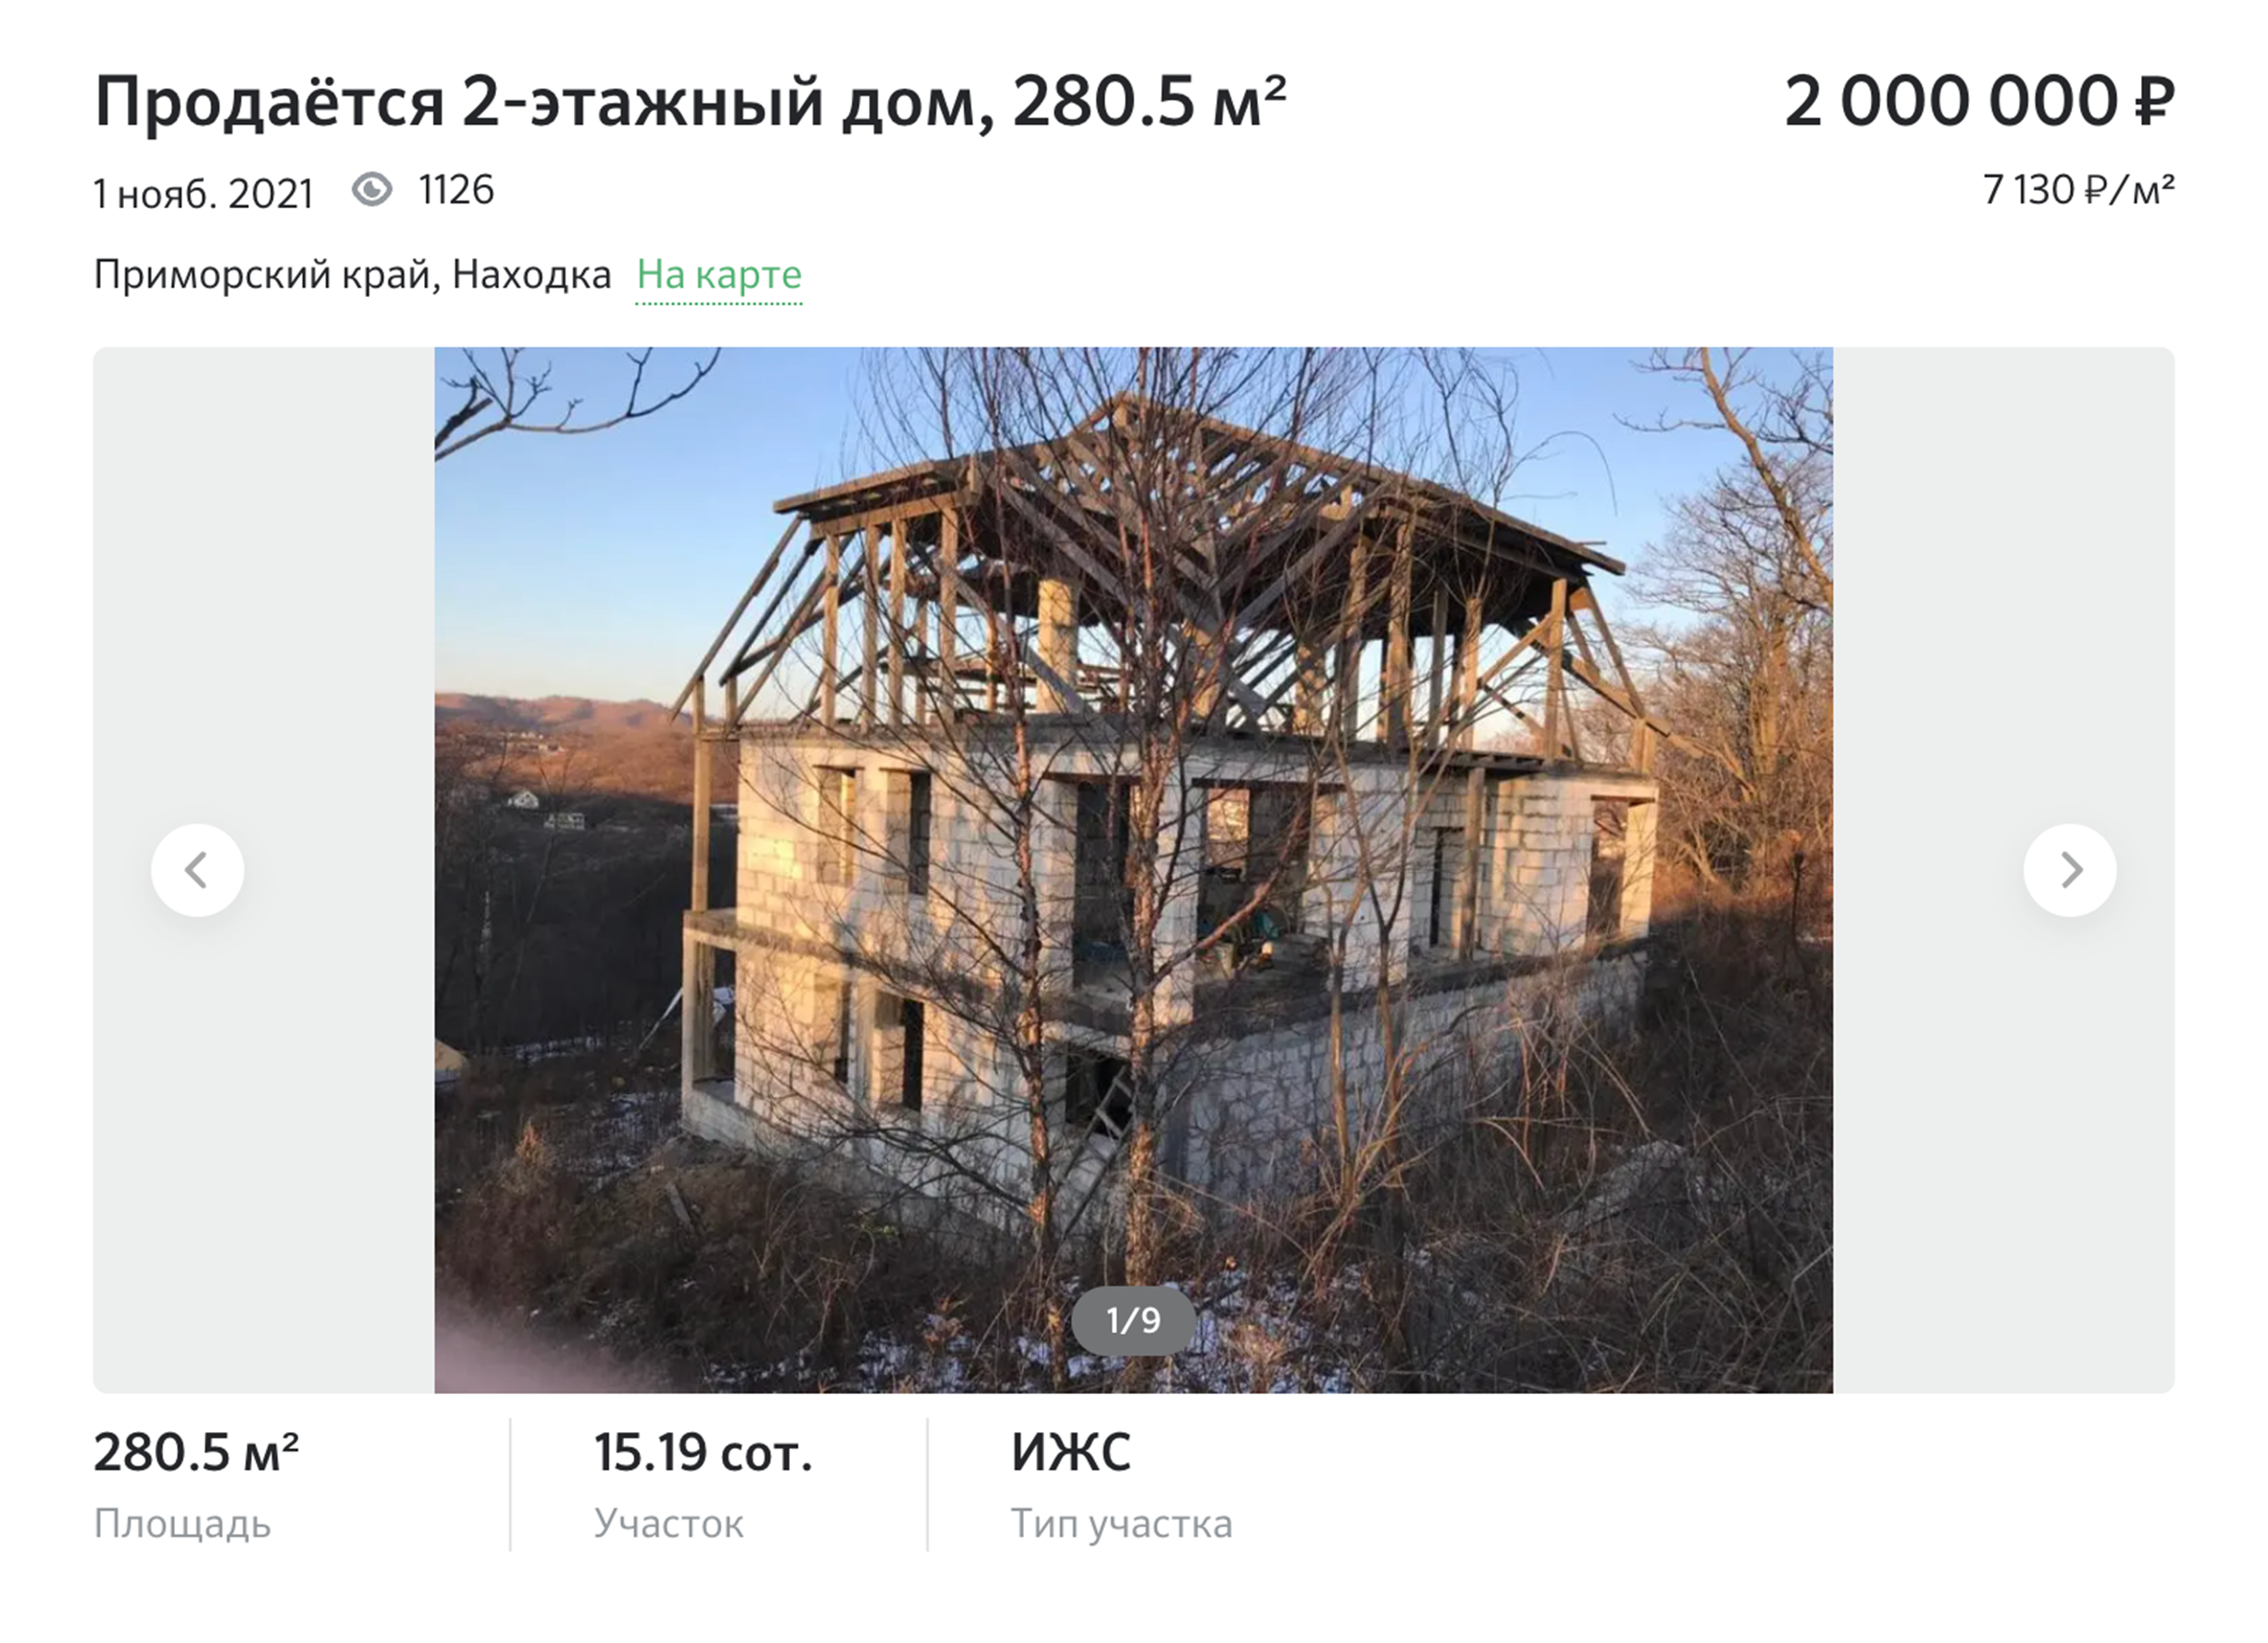 Недостроенный дом площадью 280 м² — 2 млн. Источник: domclick.ru